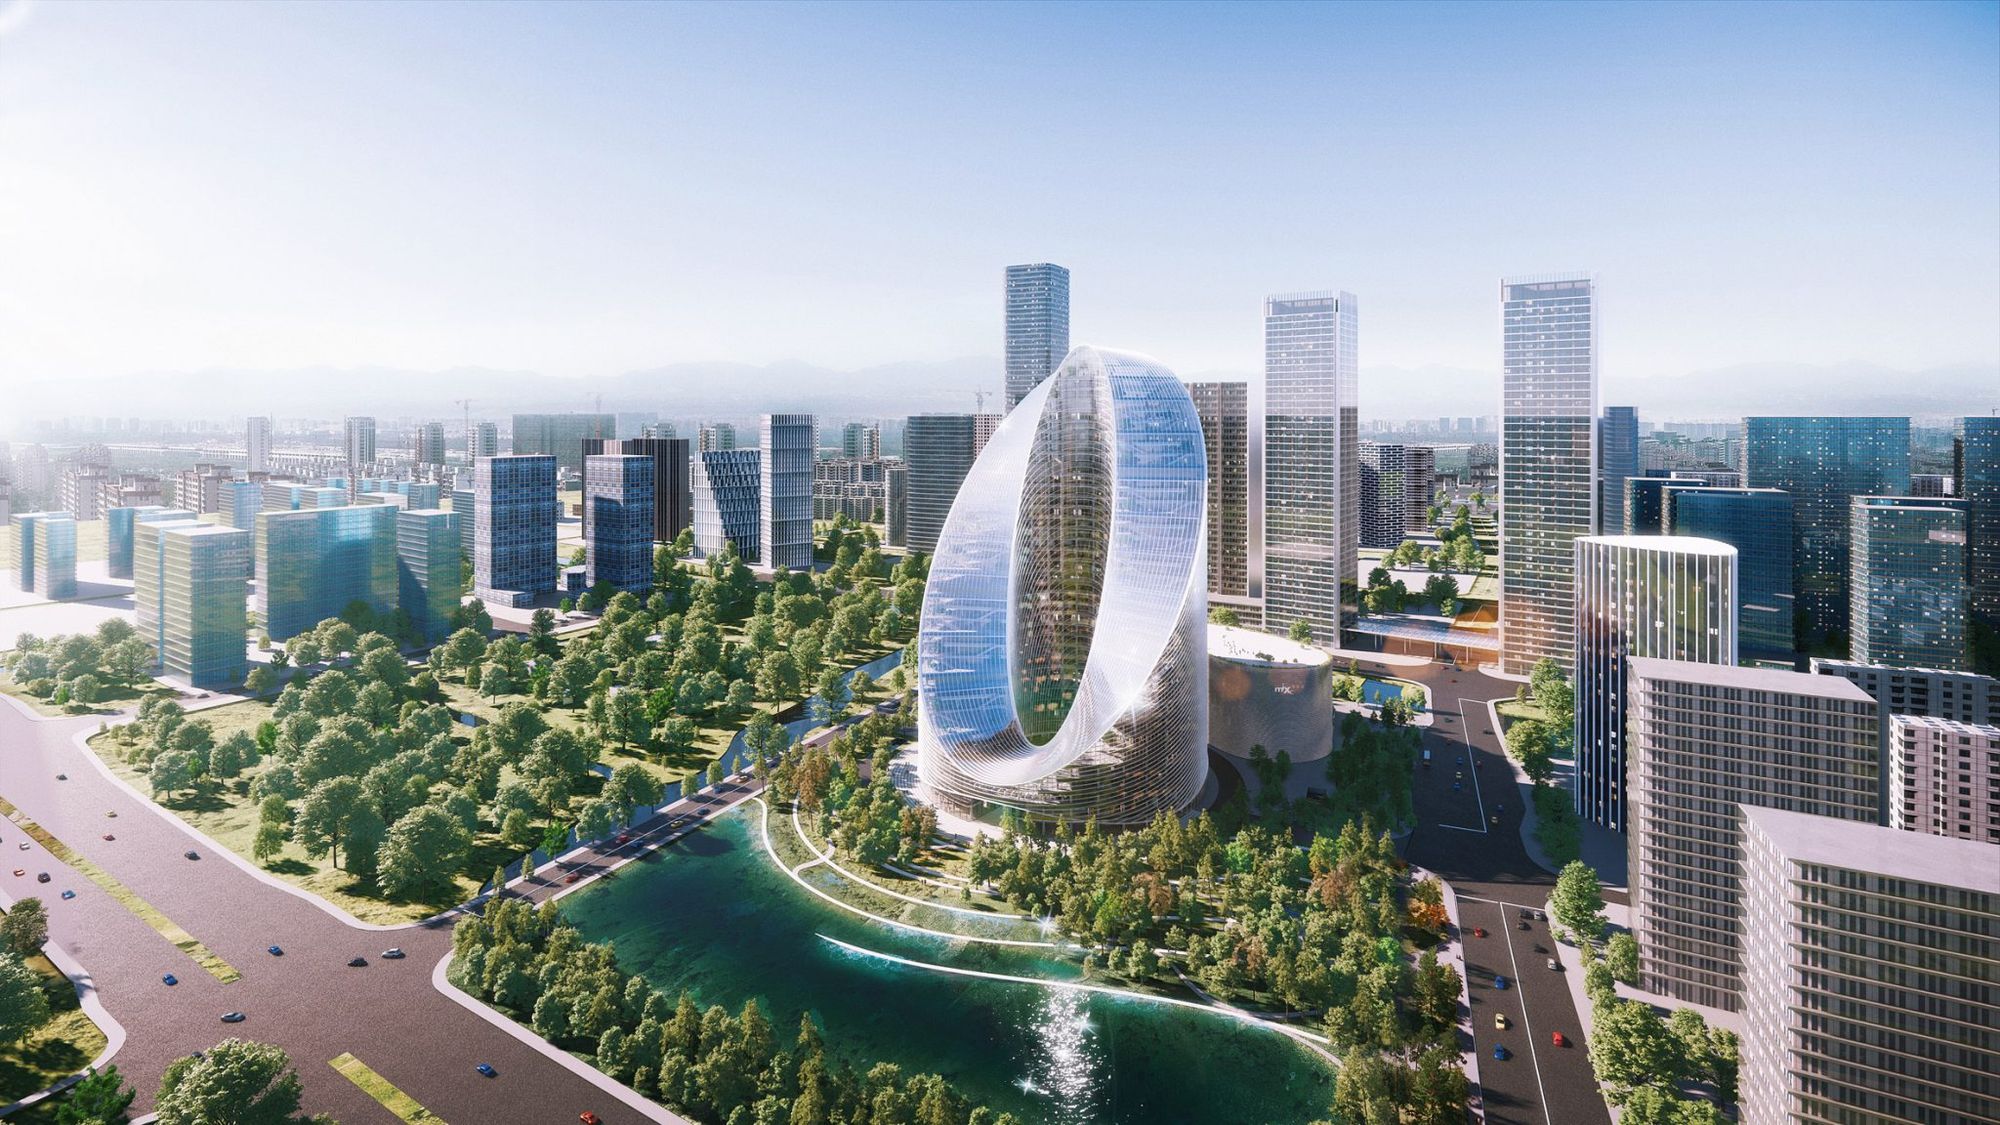 BIG to design a loop-shaped skyscraper